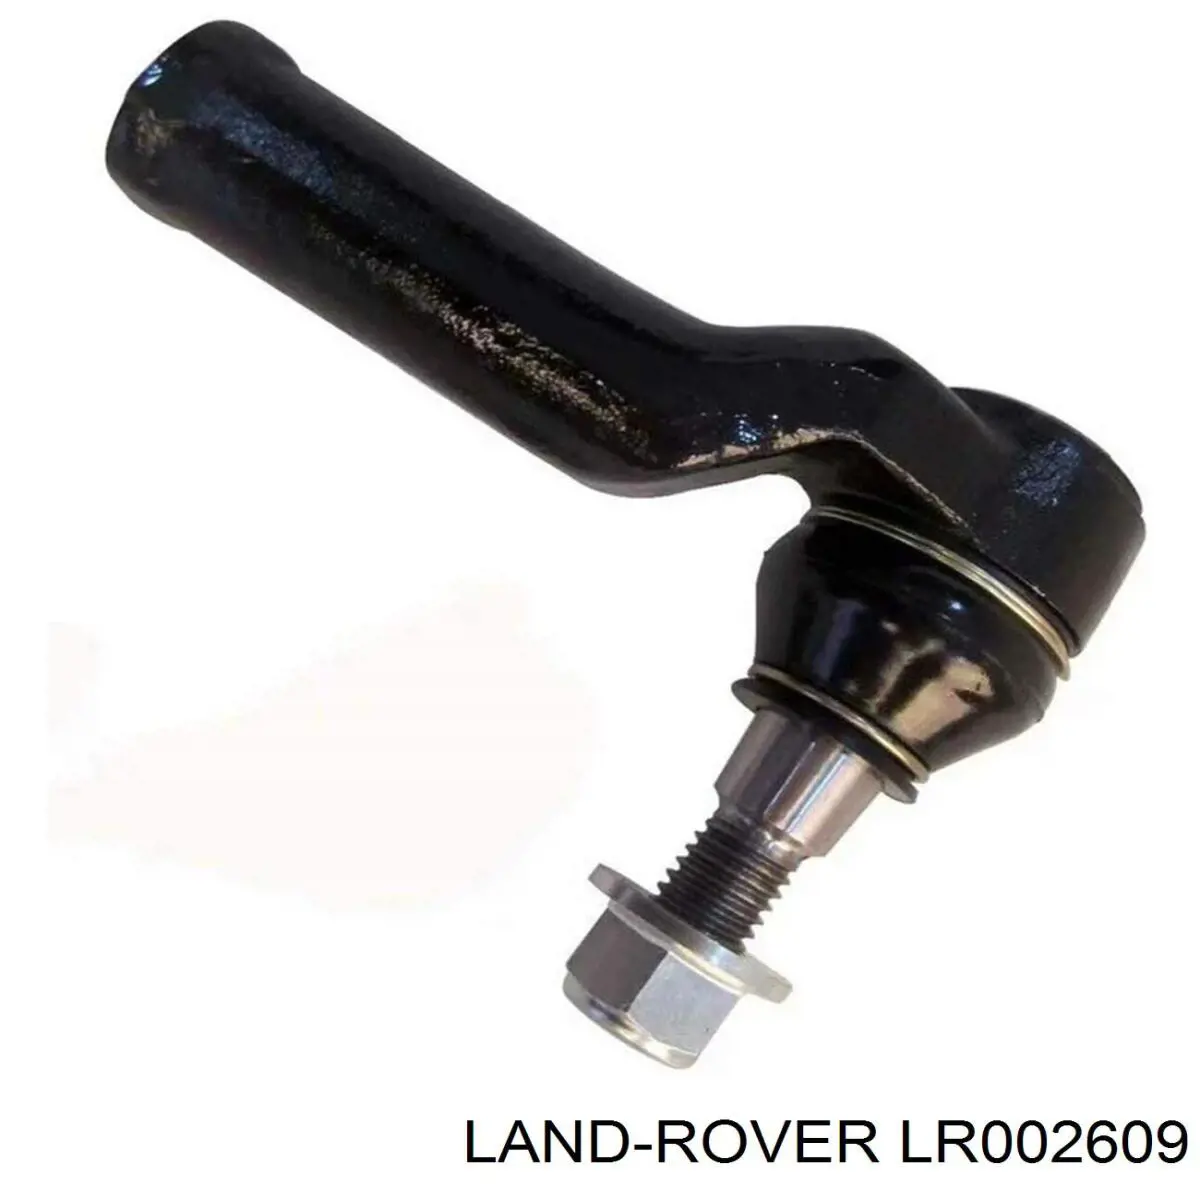 LR002609 Land Rover ponta externa da barra de direção